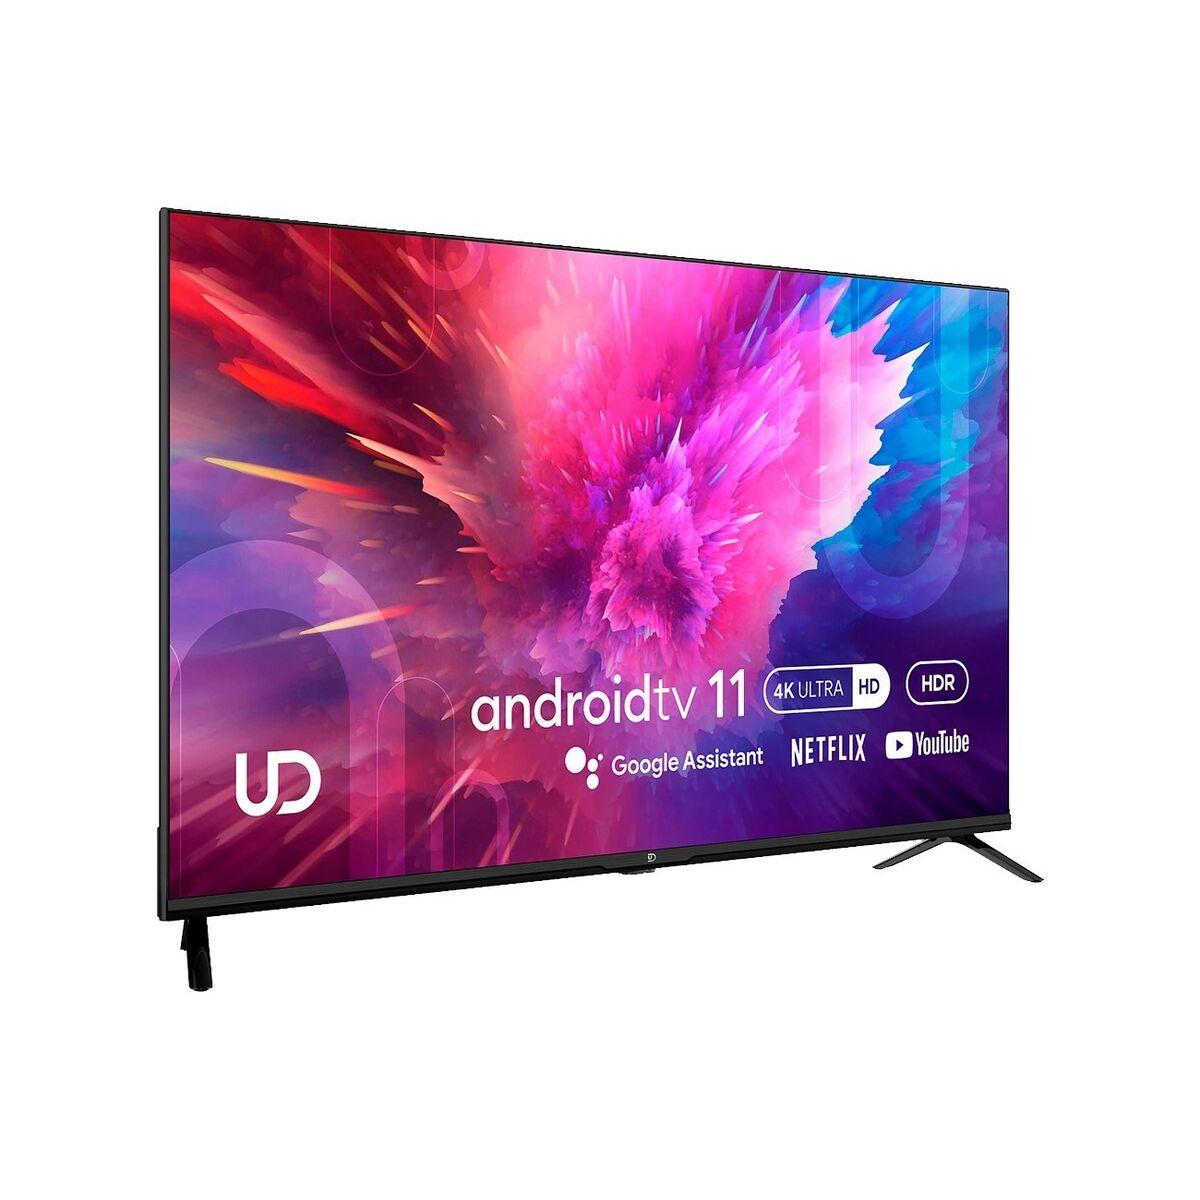 Smart TV UD 43U6210 43" 4K Ultra HD D-LED